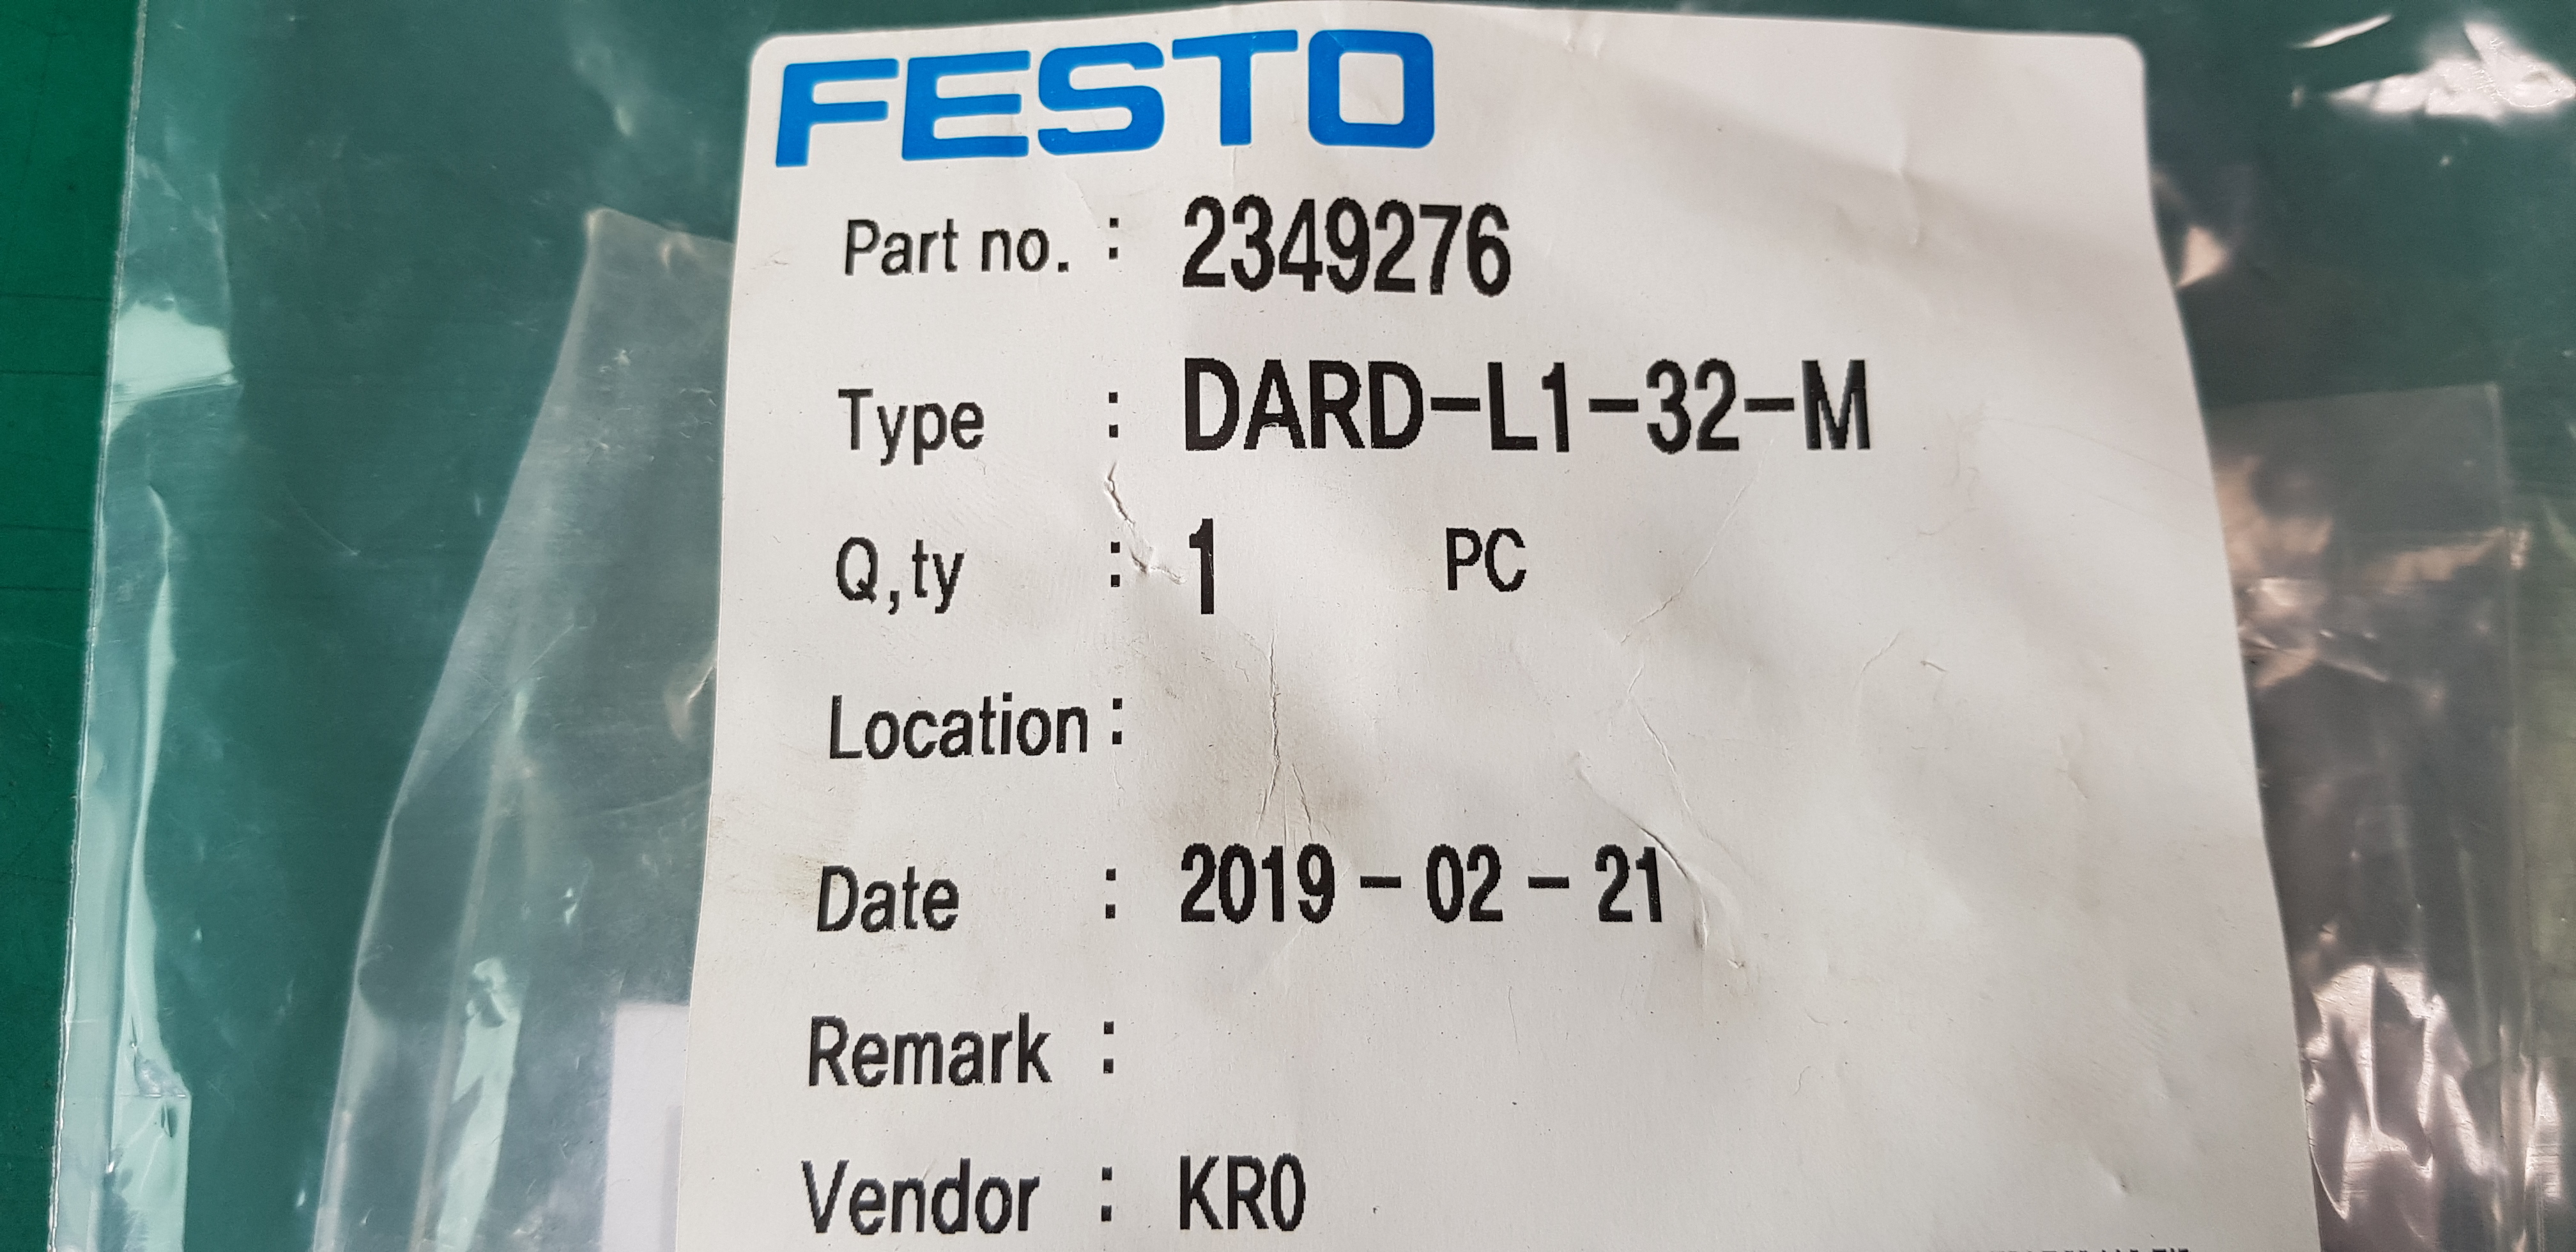 FESTO DARD-L1-32-M (A급 -미사용품)